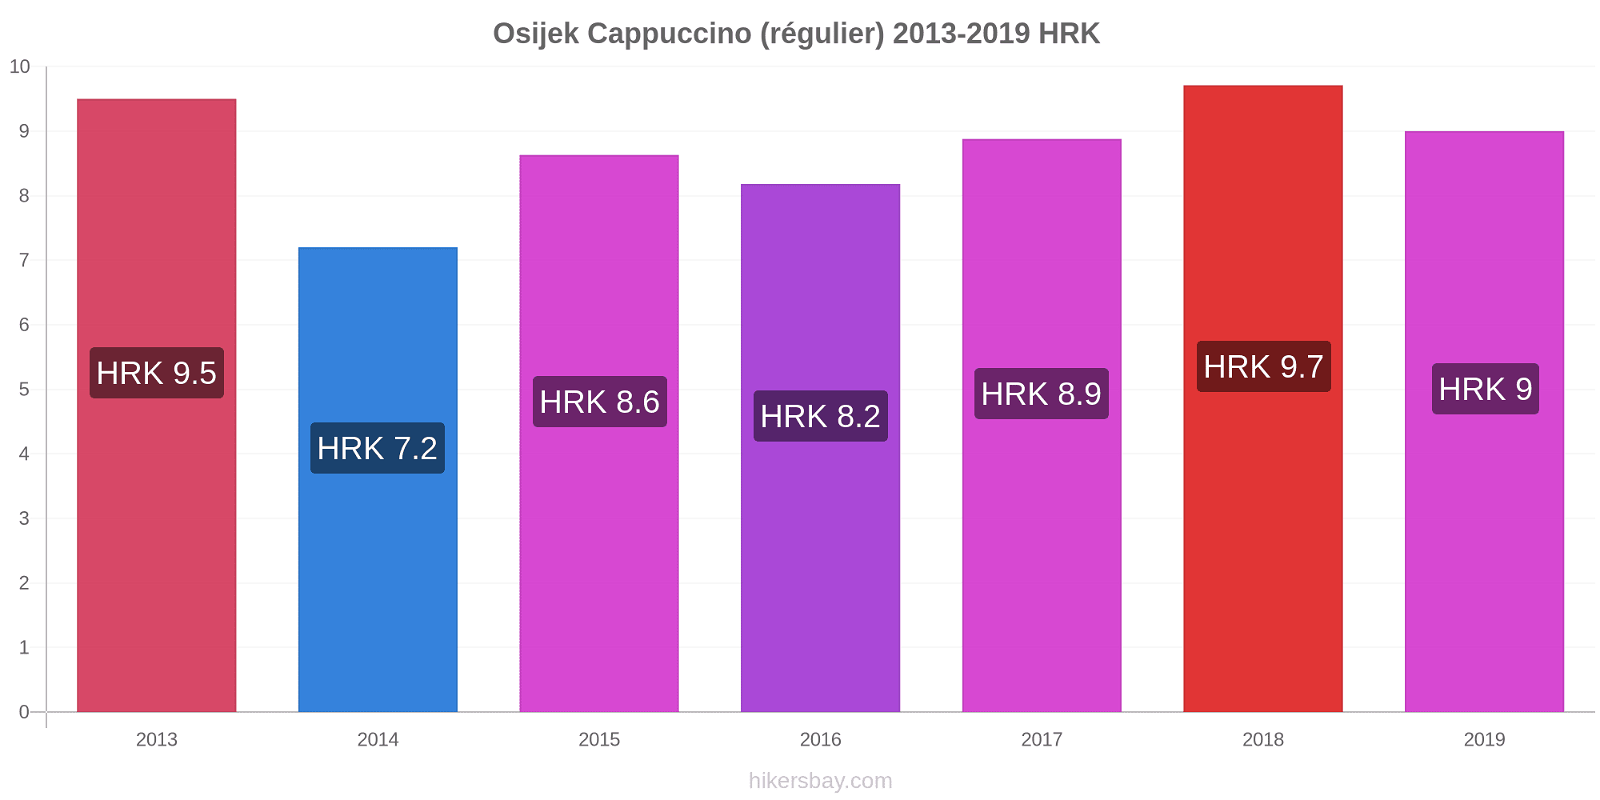 Osijek changements de prix Cappuccino (régulier) hikersbay.com